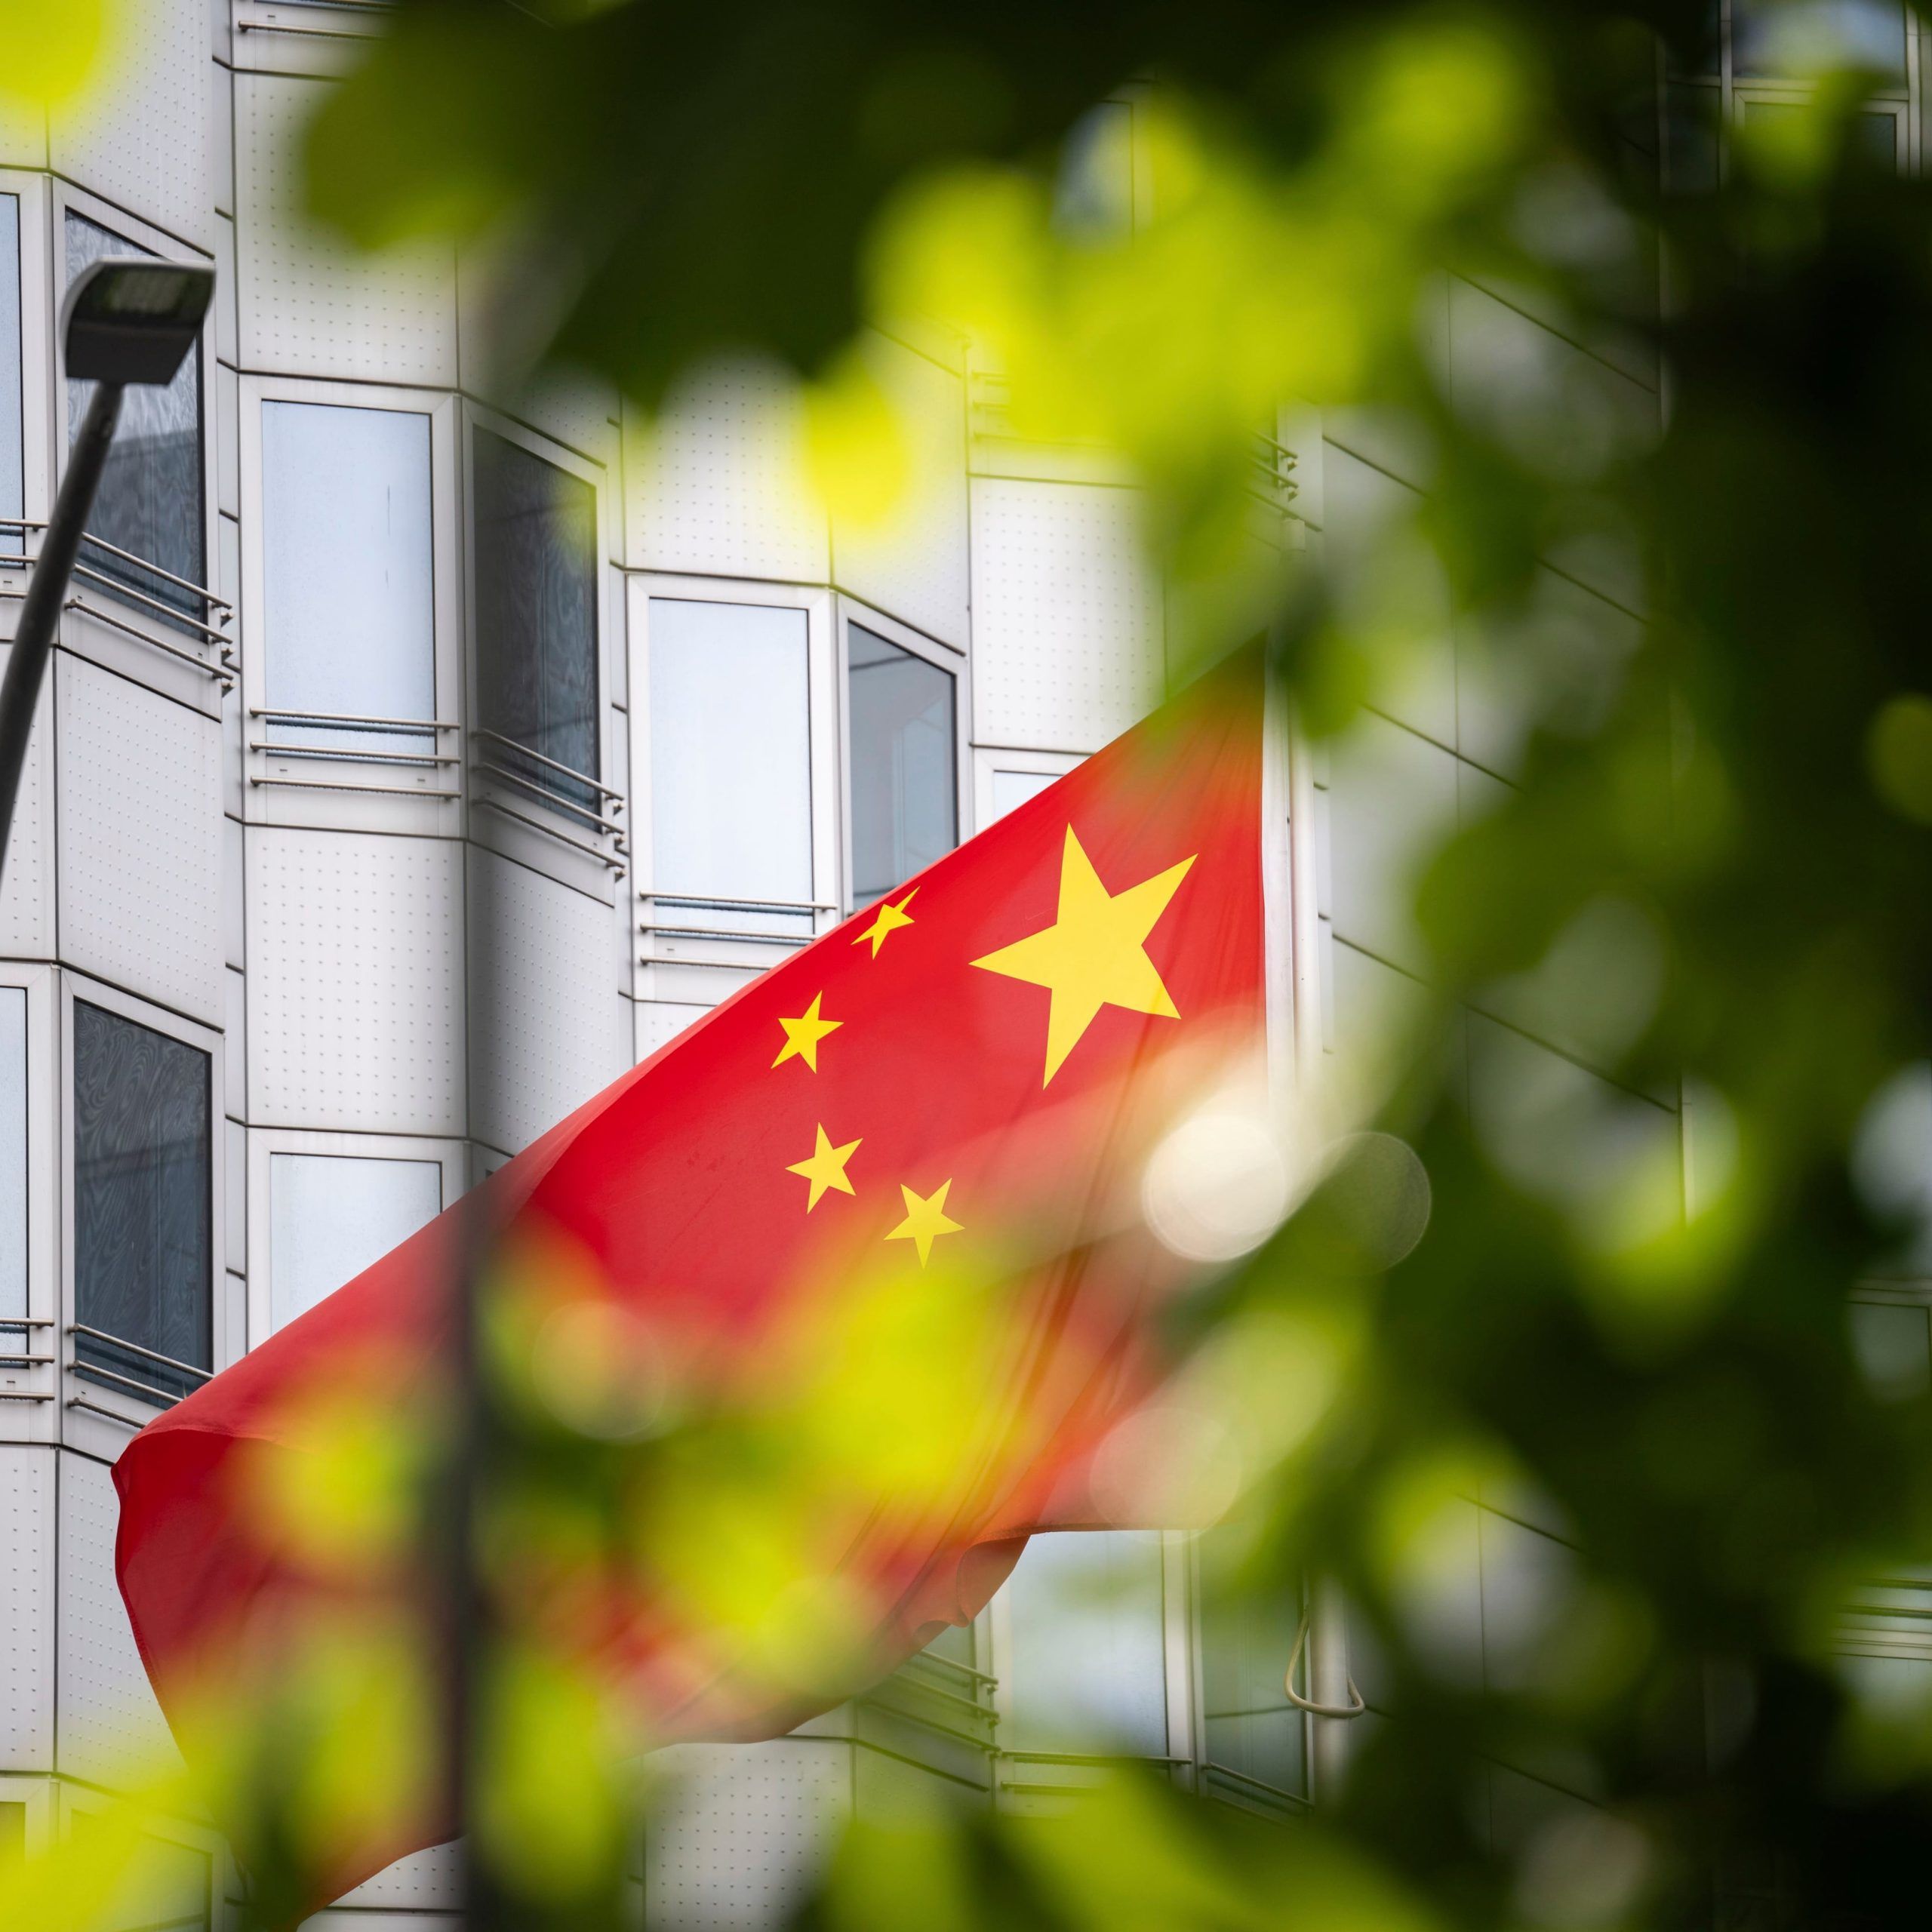 Alemania detuvo al asesor de un eurodiputado sospechoso de espiar para China